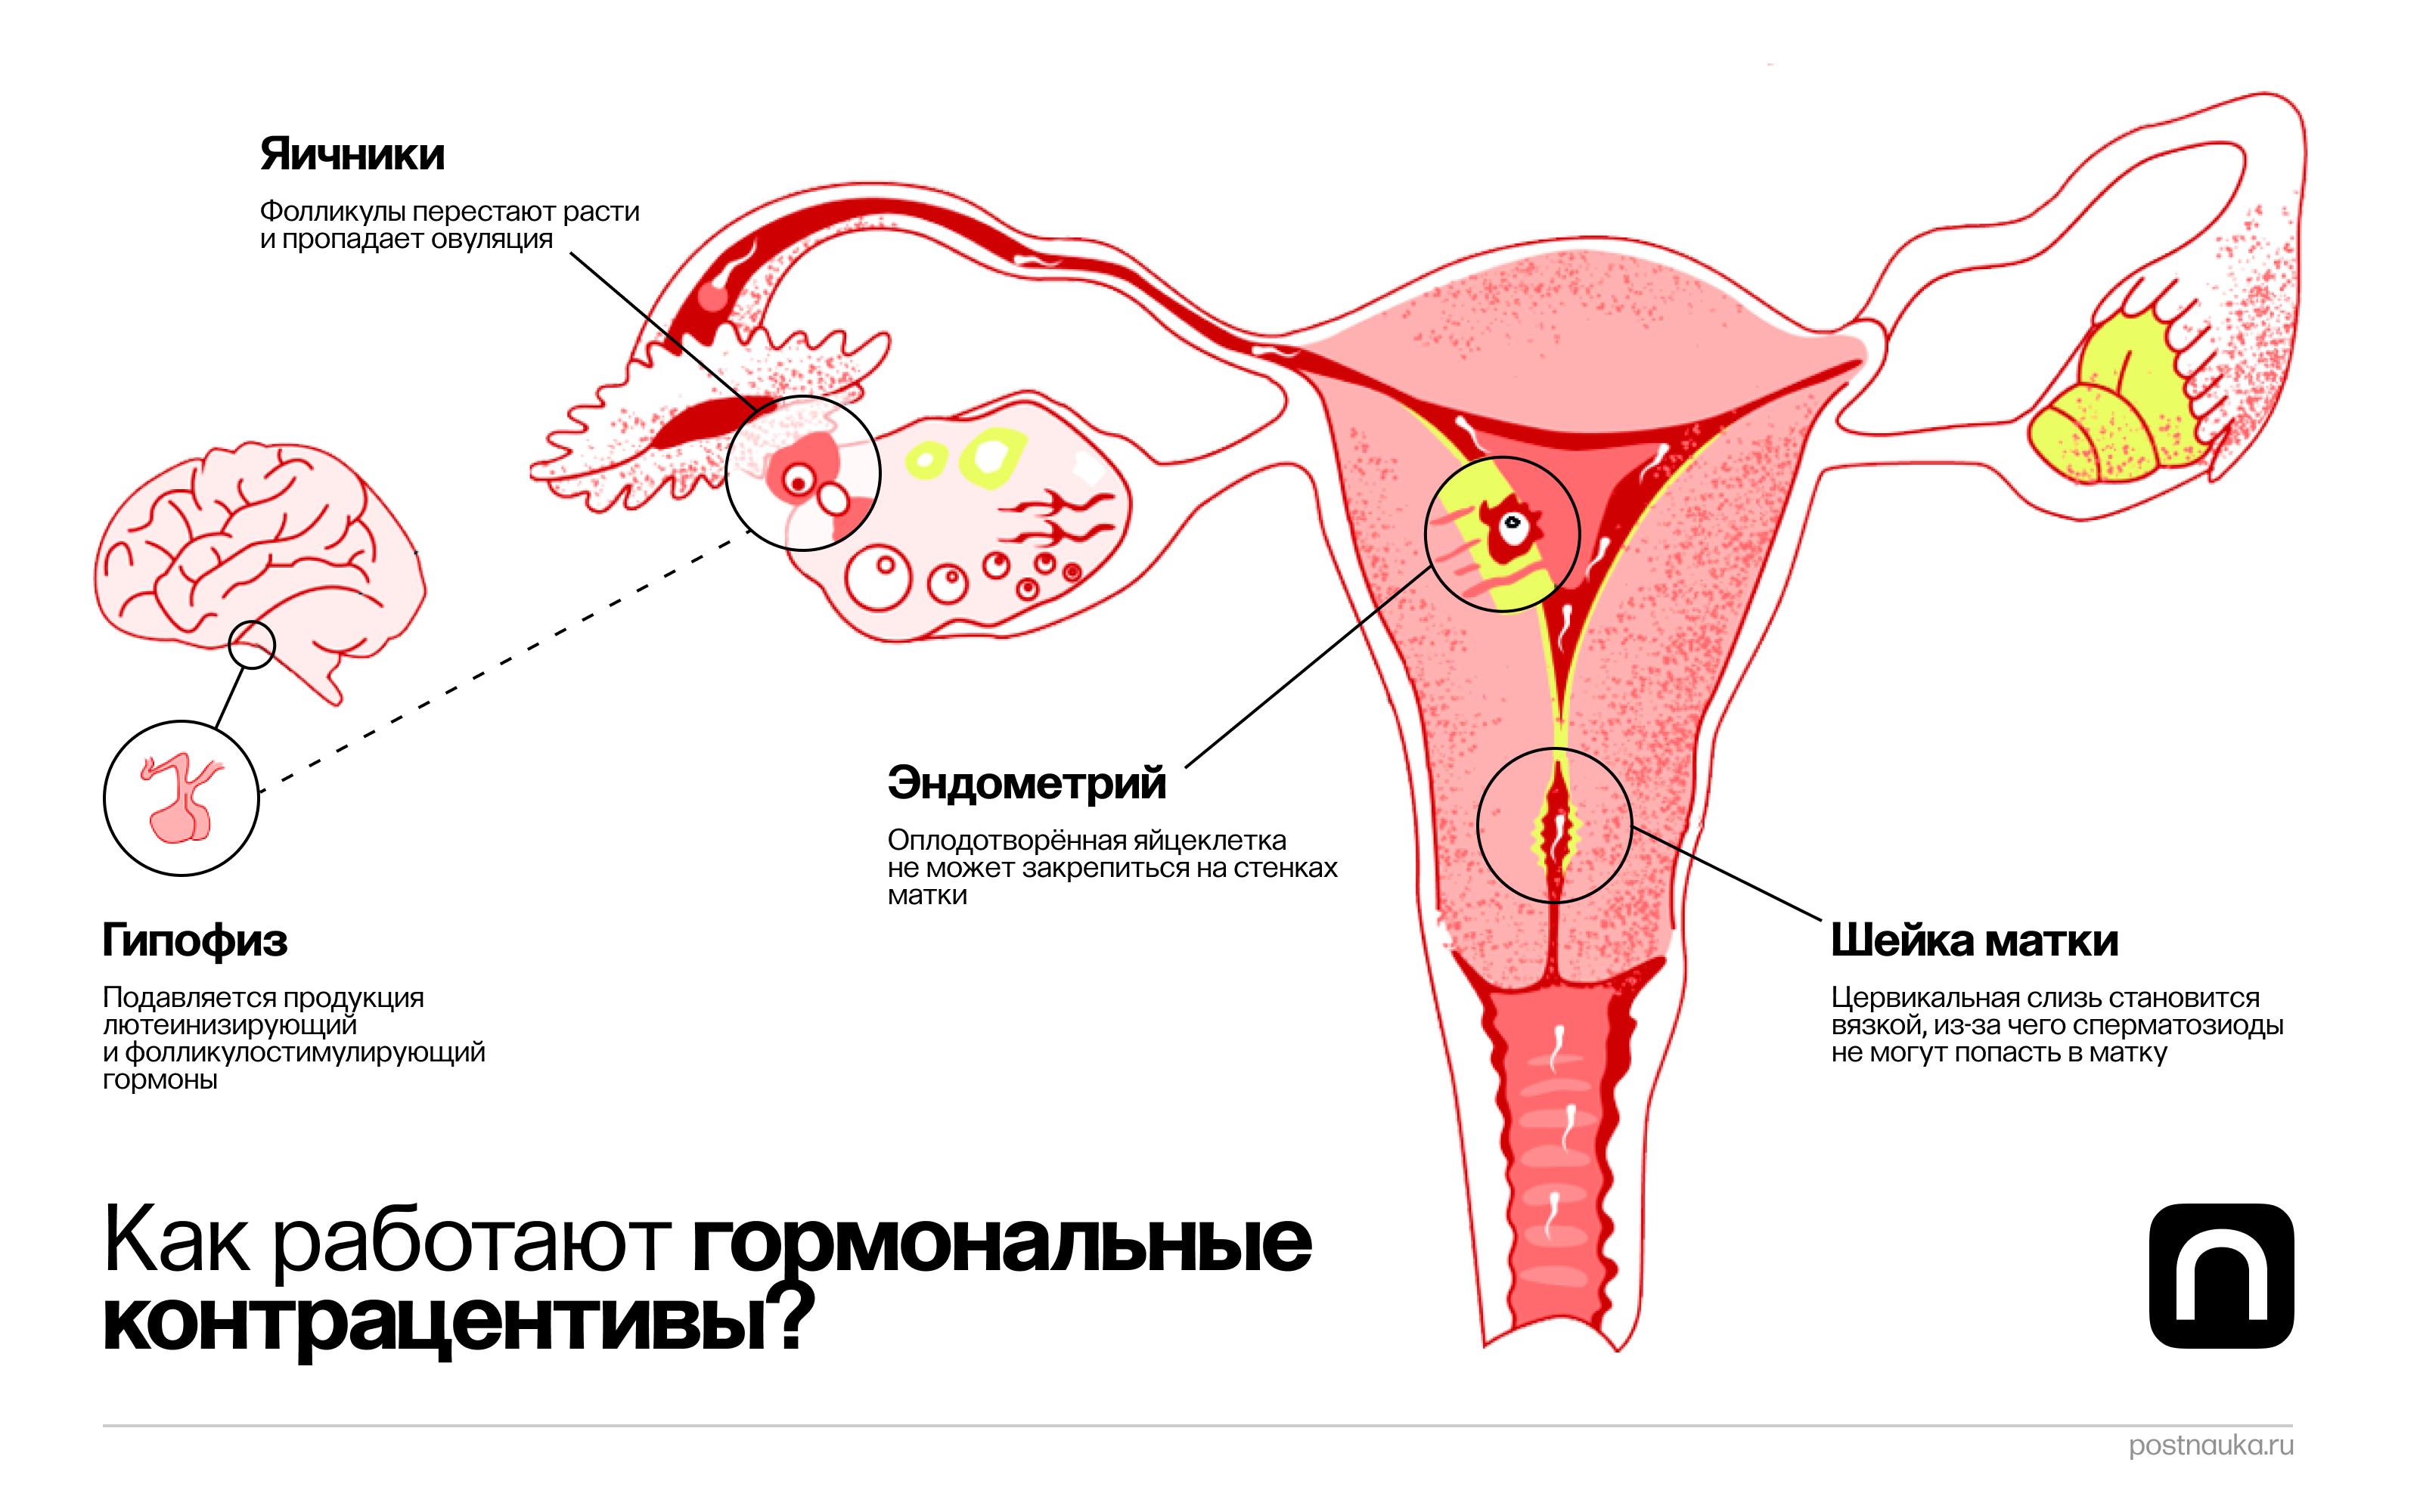 сокращения матки при оргазме беременной фото 115